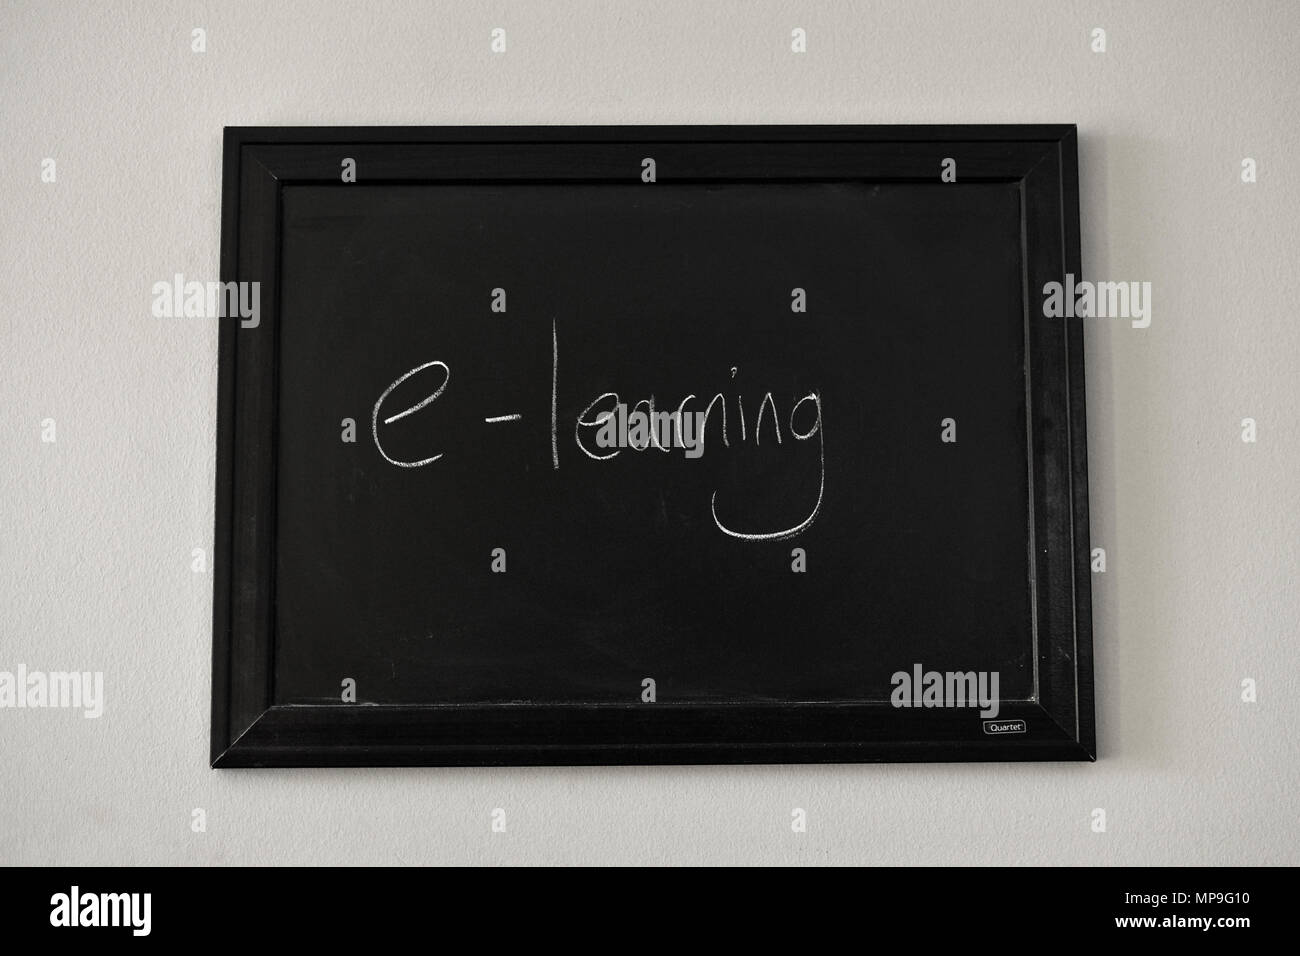 e-learning written in white chalk on a wall mounted blackboard. Stock Photo